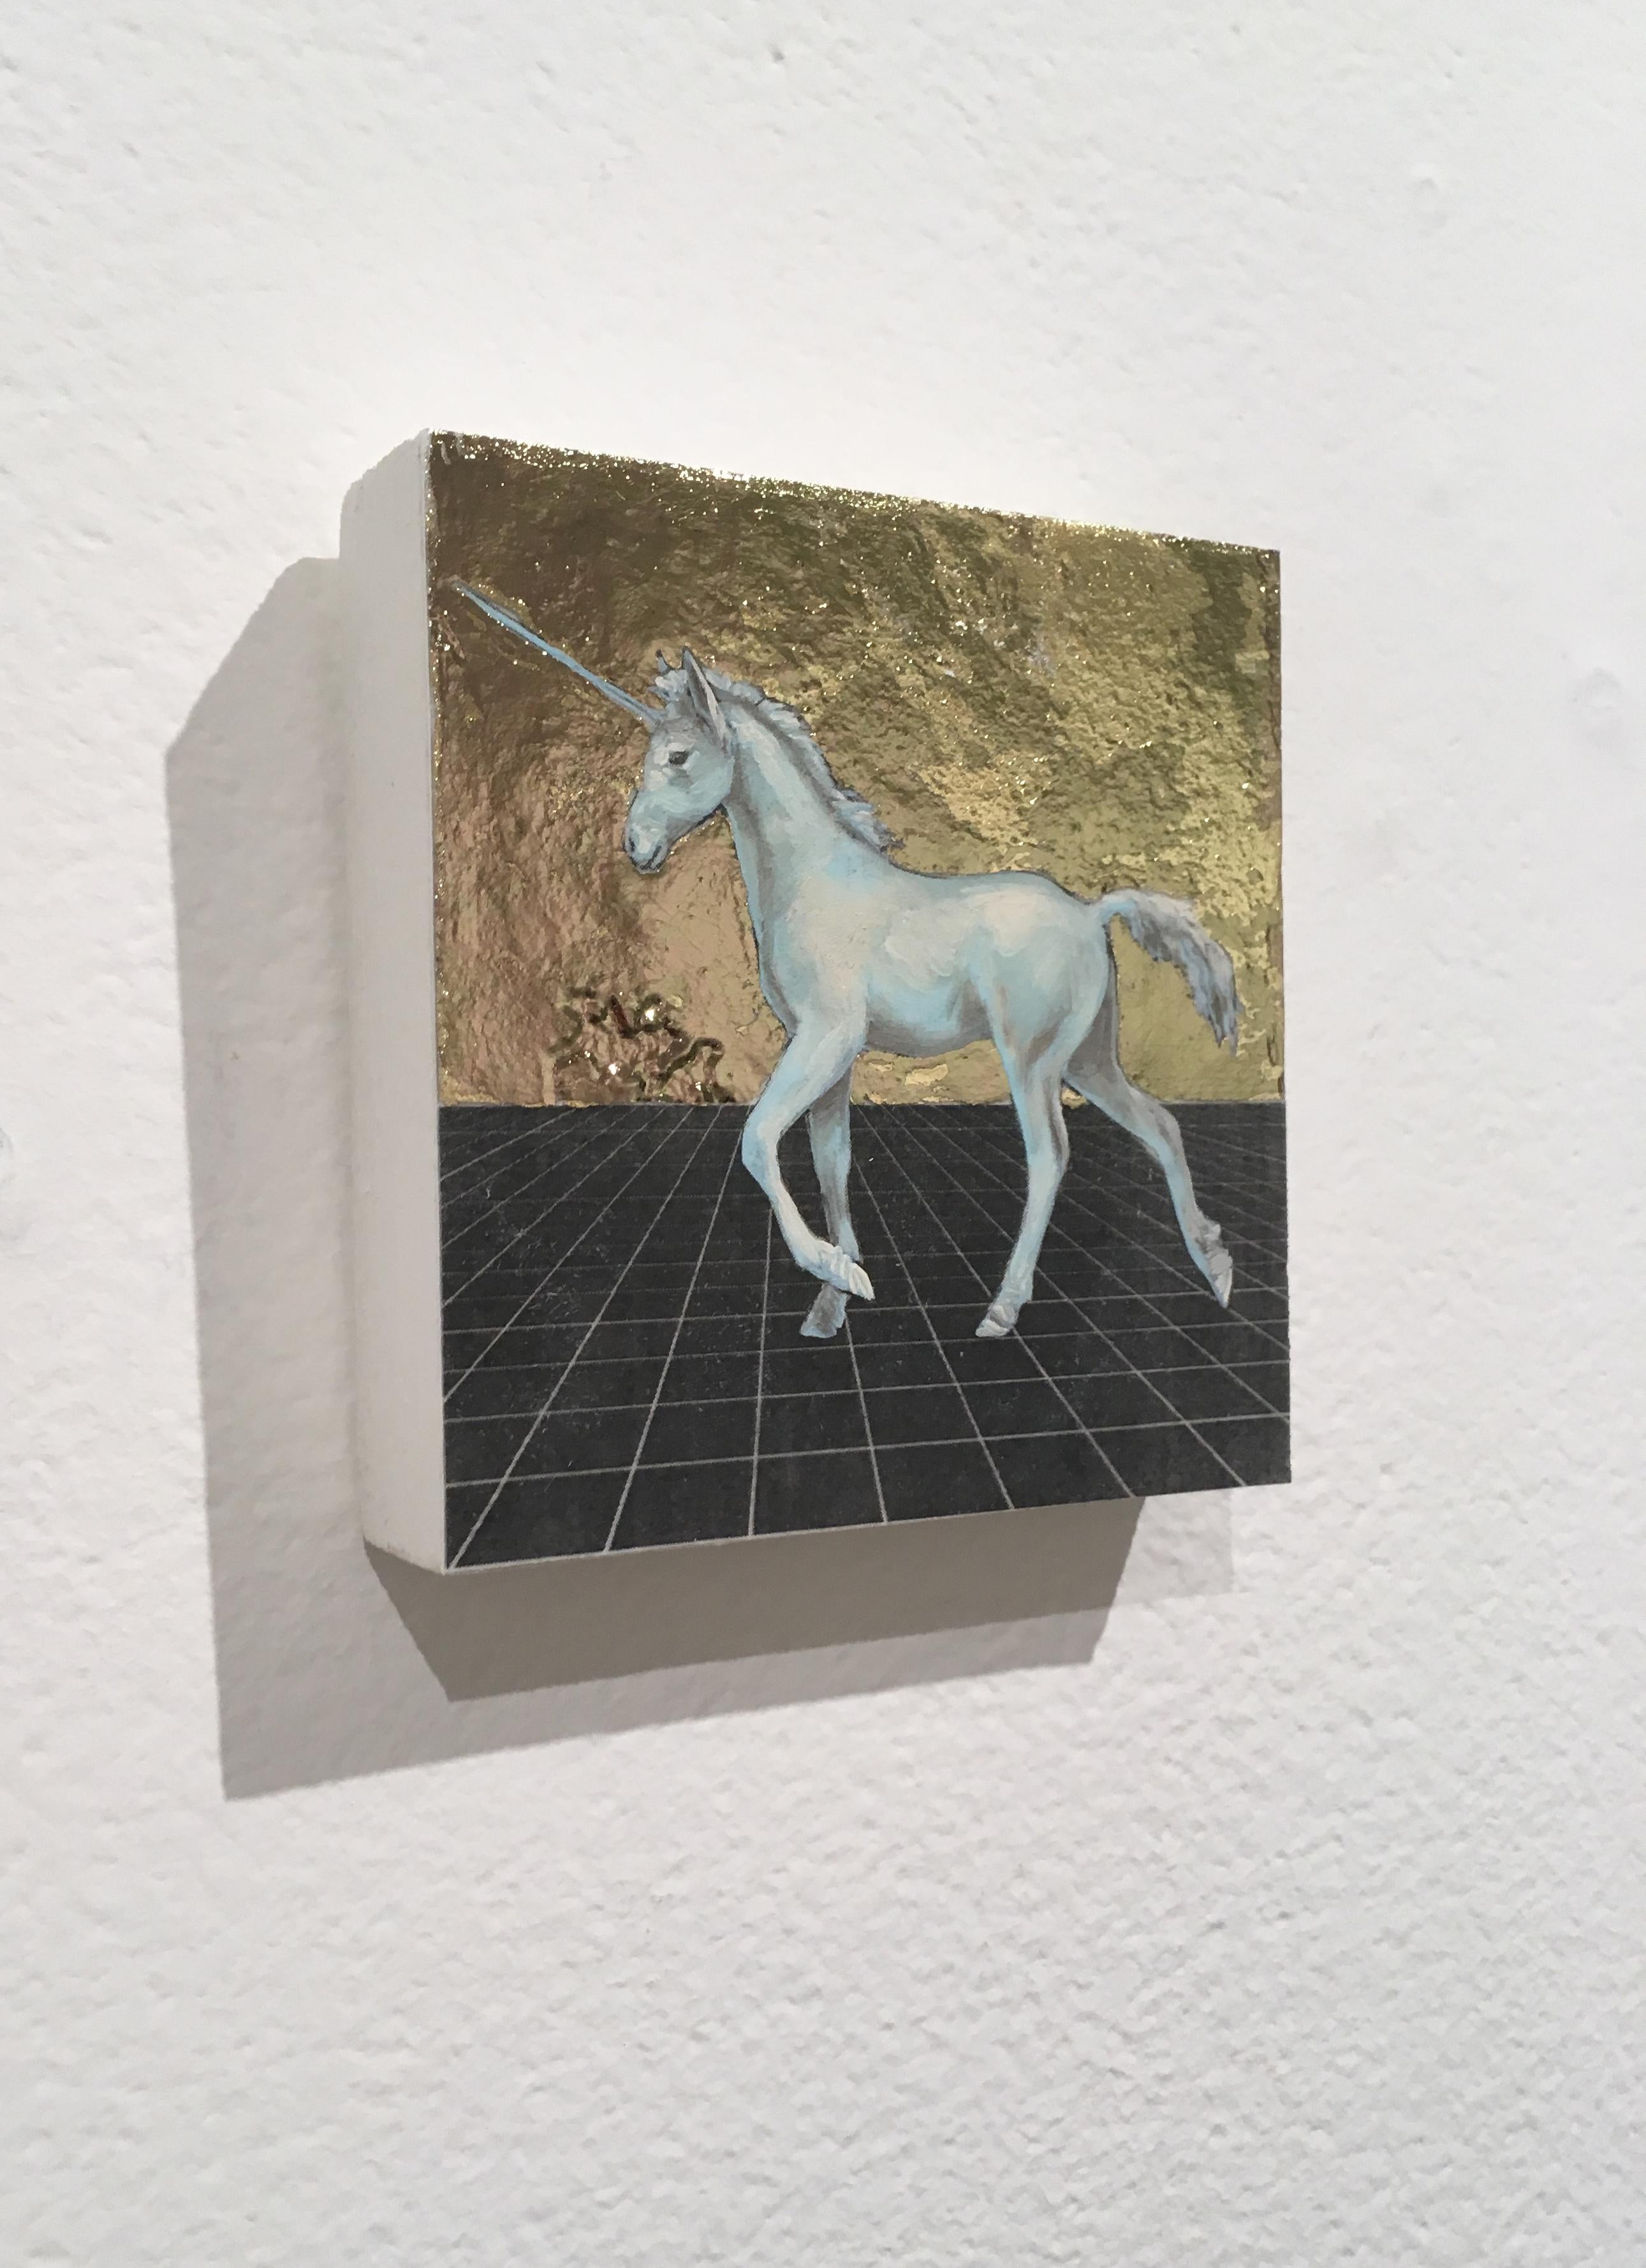 Shy Unicorn - Contemporary Mixed Media Art by Alexis Kandra